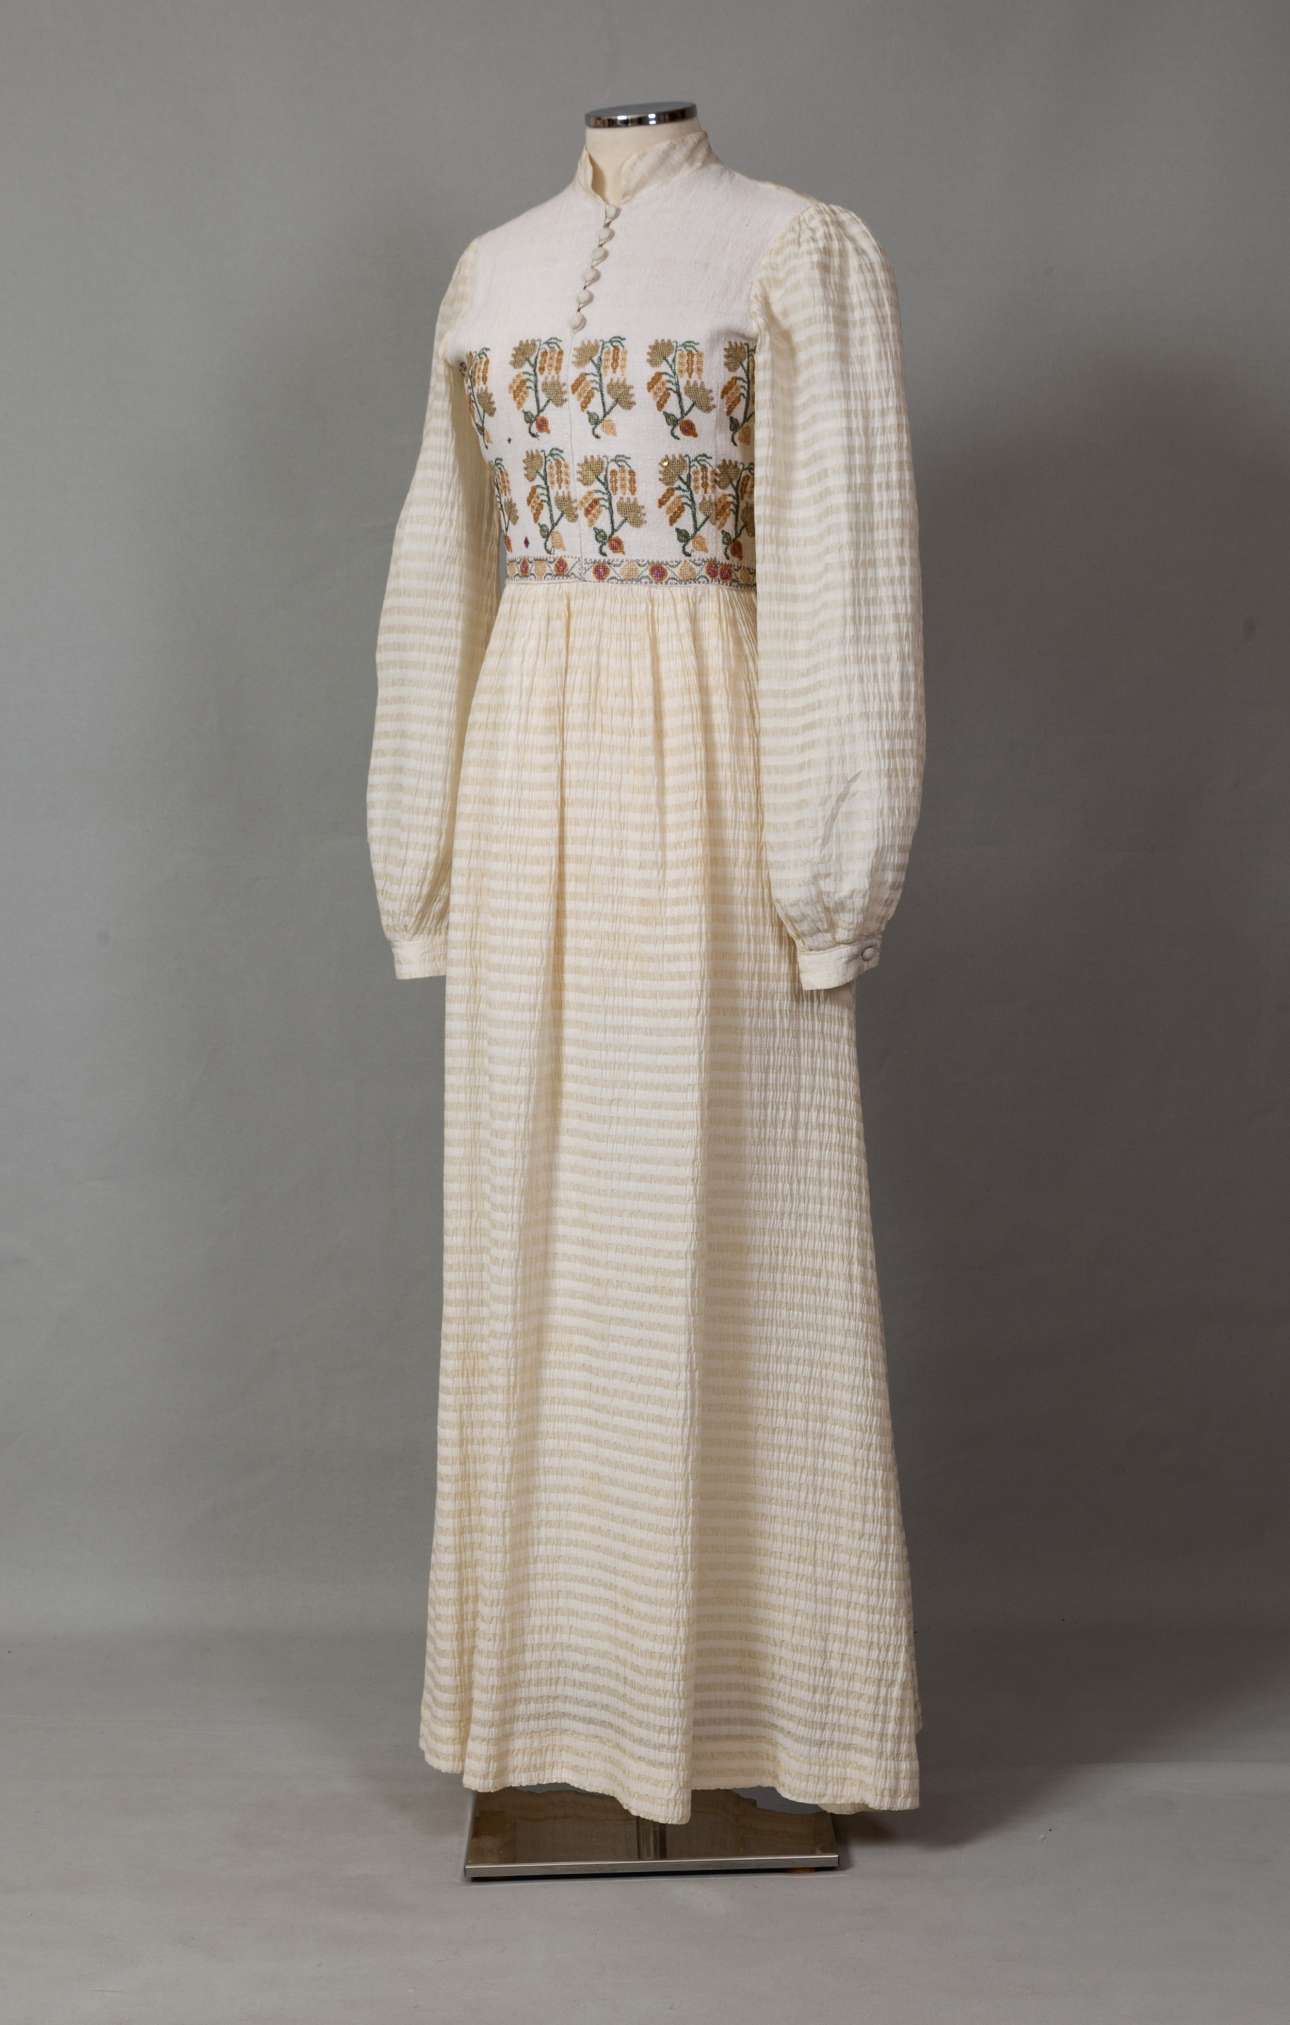 Νυφικό φόρεμα από υπόλευκο μετάξι, υφασμένο στον αργαλειό από την Όλγα Κεχάεφ, Αθήνα. Διακόσμηση με κεντημένο τσεβρέ στο στήθος. Φορέθηκε από τη Δέσποινα Σπαθαράκη στον γάμο της με τον Νικόλαο Τσιγκρή στον Άγιο Γεώργιο Αθηνών στις 4 Ιανουαρίου 1981. Δωρεά: Δέσποινα Τσιγκρή (Συλλογή ΠΛΙ)